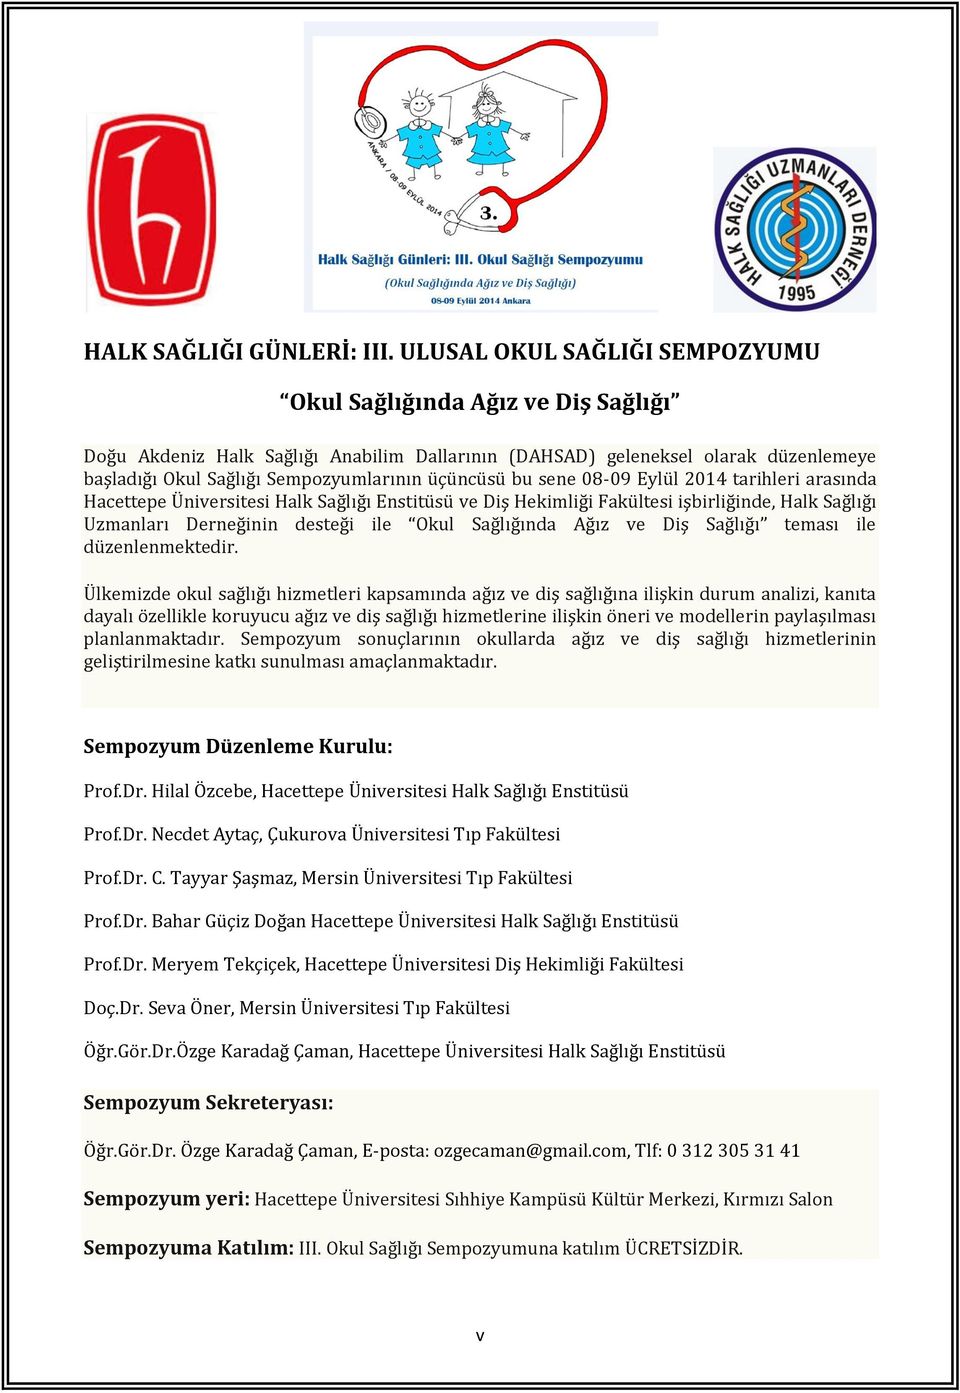 üçüncüsü bu sene 08-09 Eylül 2014 tarihleri arasında Hacettepe Üniversitesi Halk Sağlığı Enstitüsü ve Diş Hekimliği Fakültesi işbirliğinde, Halk Sağlığı Uzmanları Derneğinin desteği ile Okul